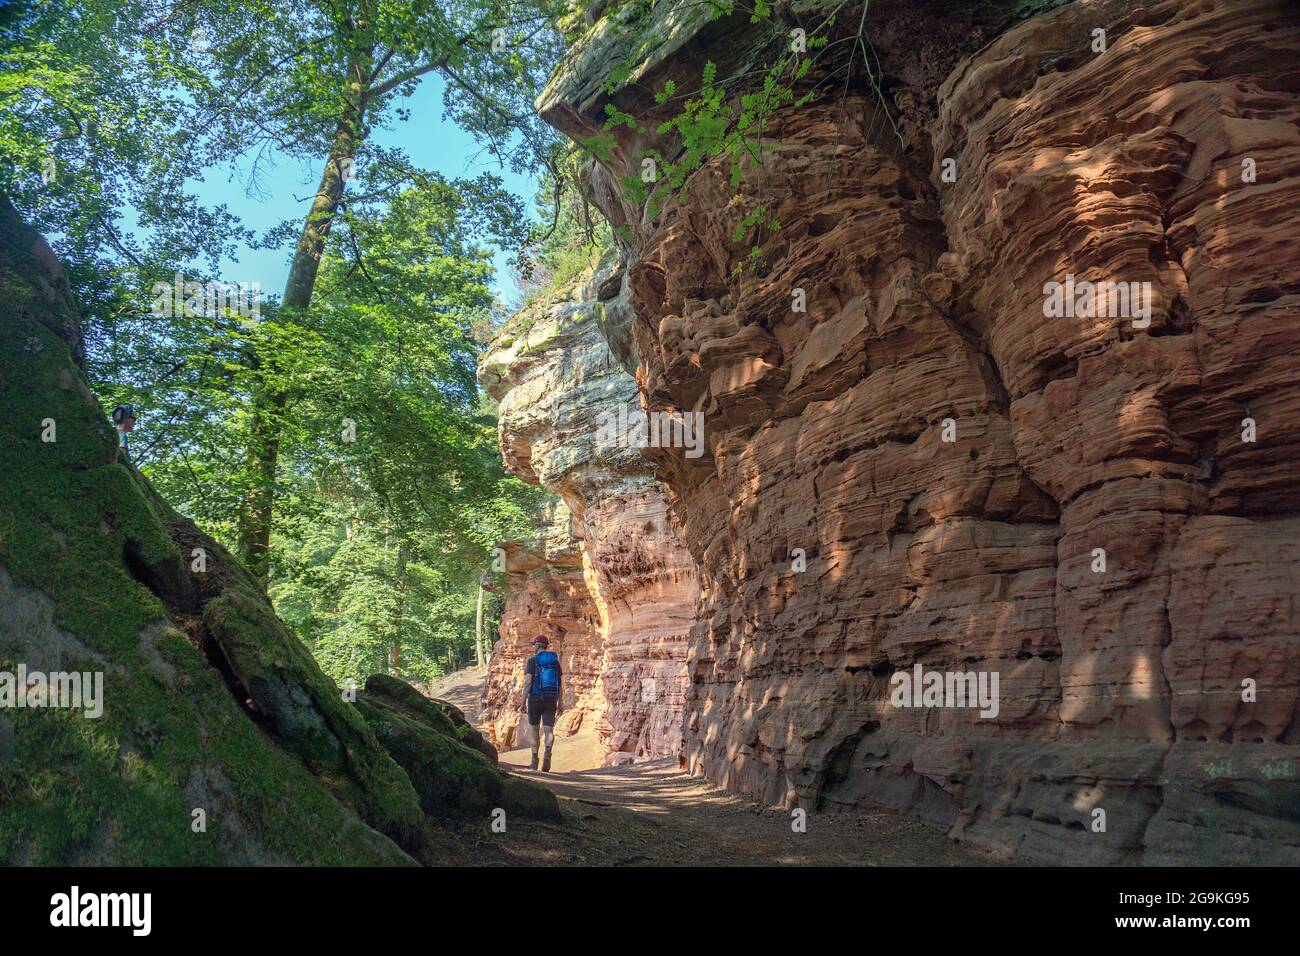 Excursionista en el Viejo Castillo Rock (Altschlossfelsen), torres de piedra de arena roja en el bosque Palatino, Eppenbrunn, Renania-Palatinado, Alemania Foto de stock